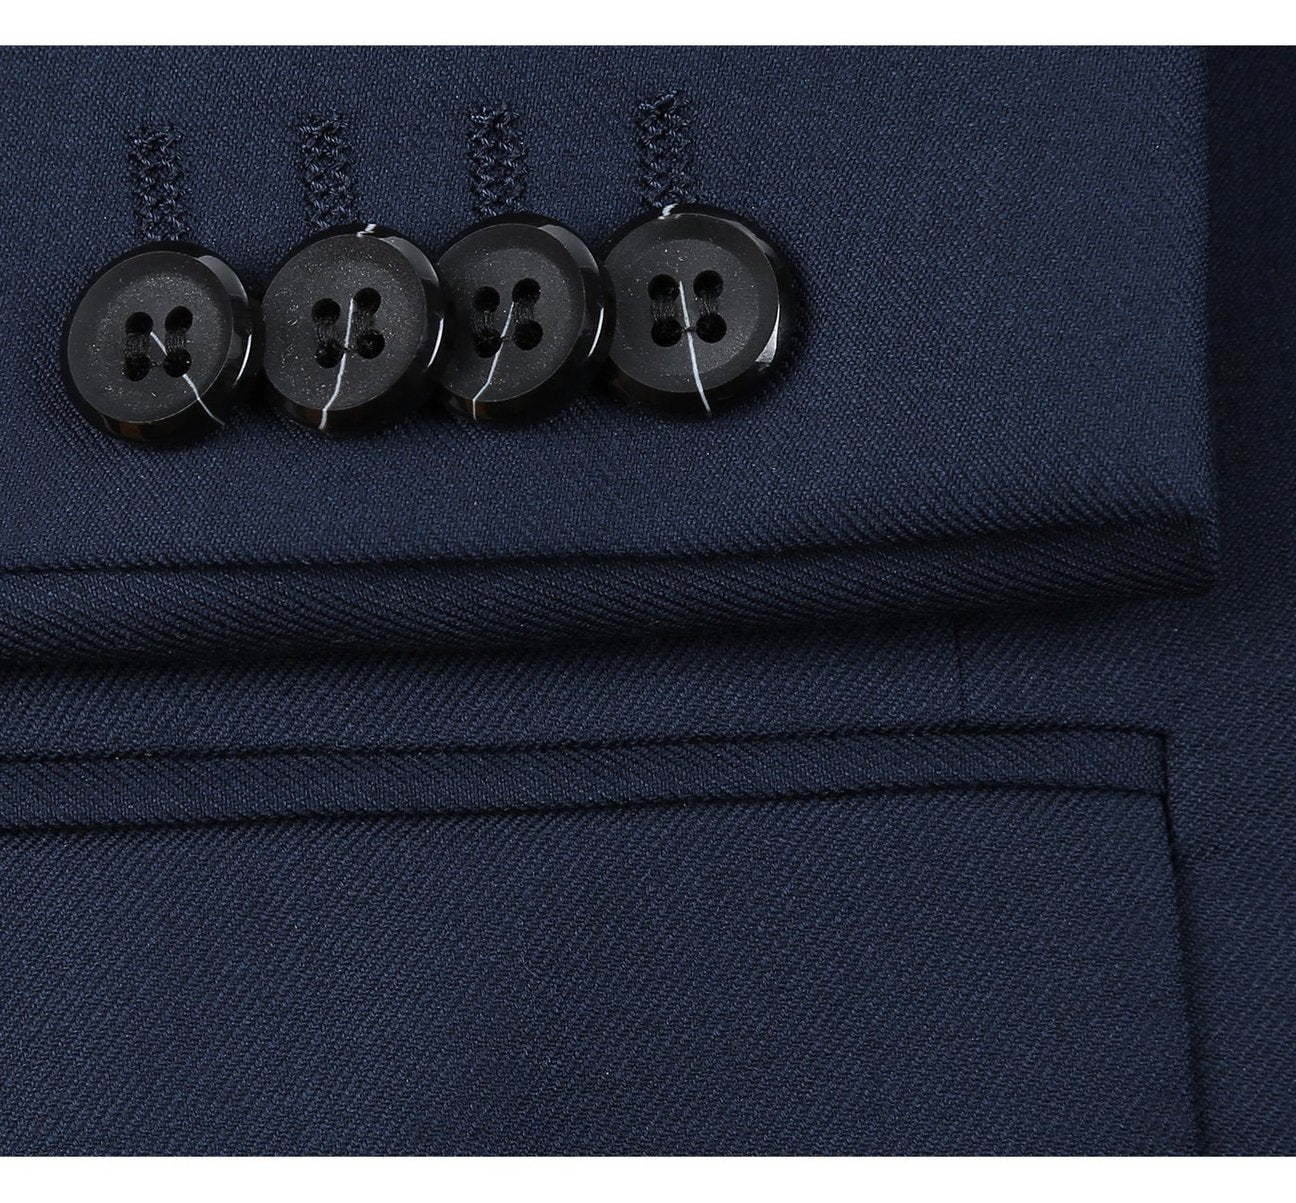 RENOIR Navy 2-Piece Classic Fit Notch Lapel Wool Suit 508-19